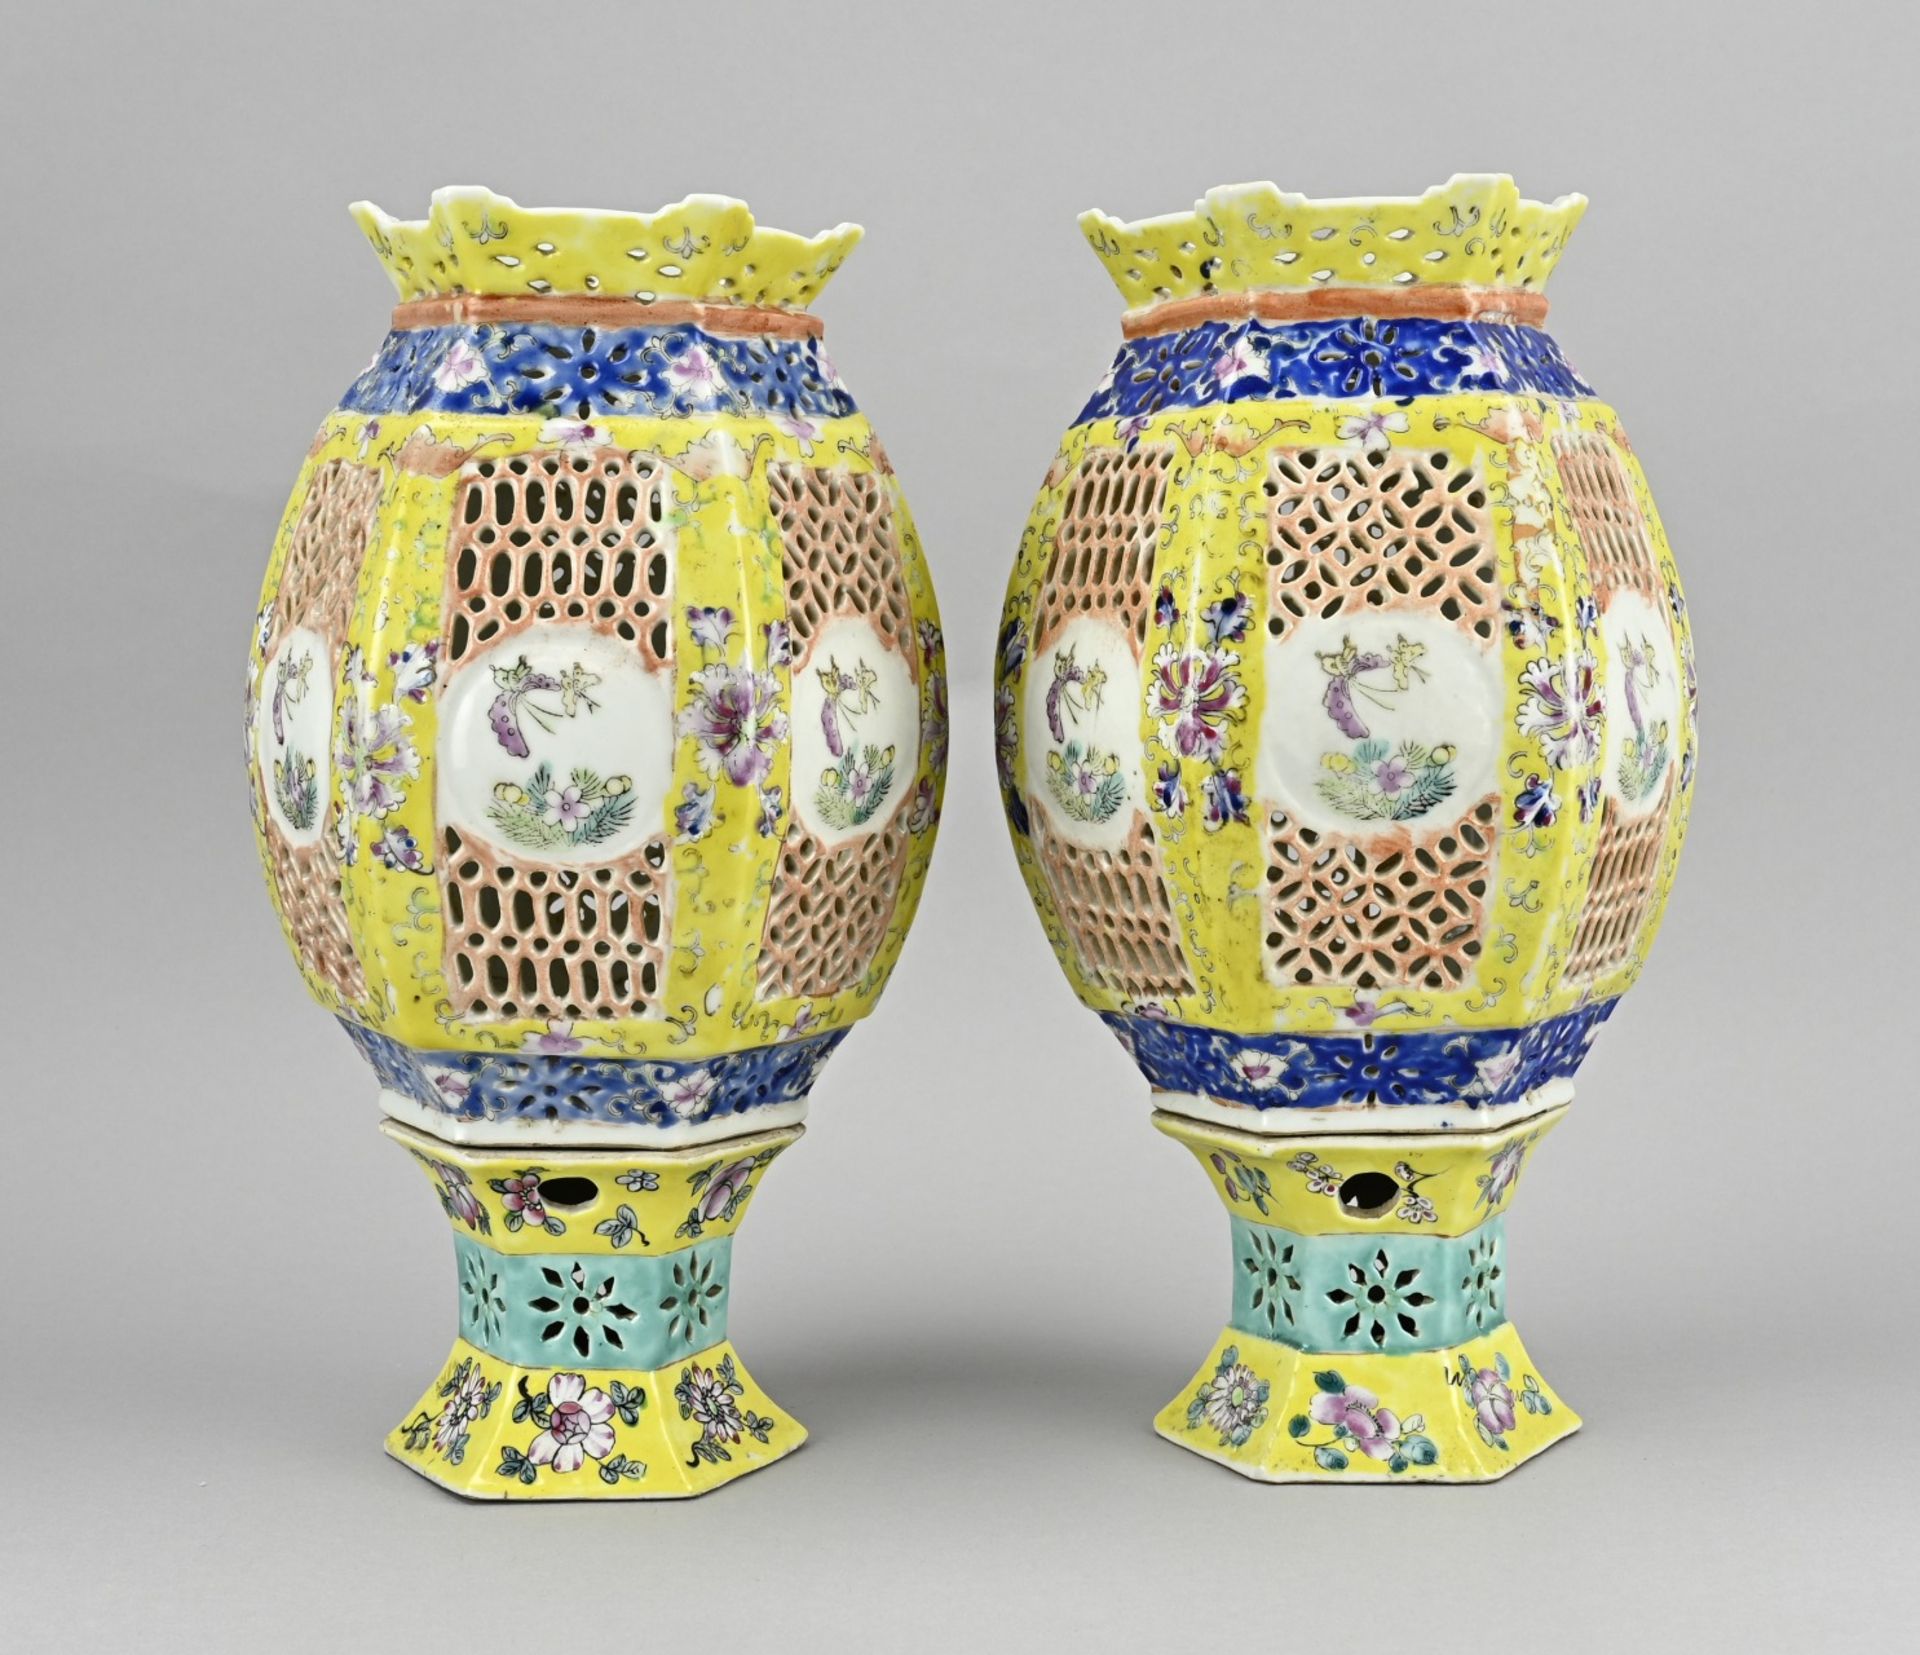 Pair of Chinese lanterns - Image 2 of 3